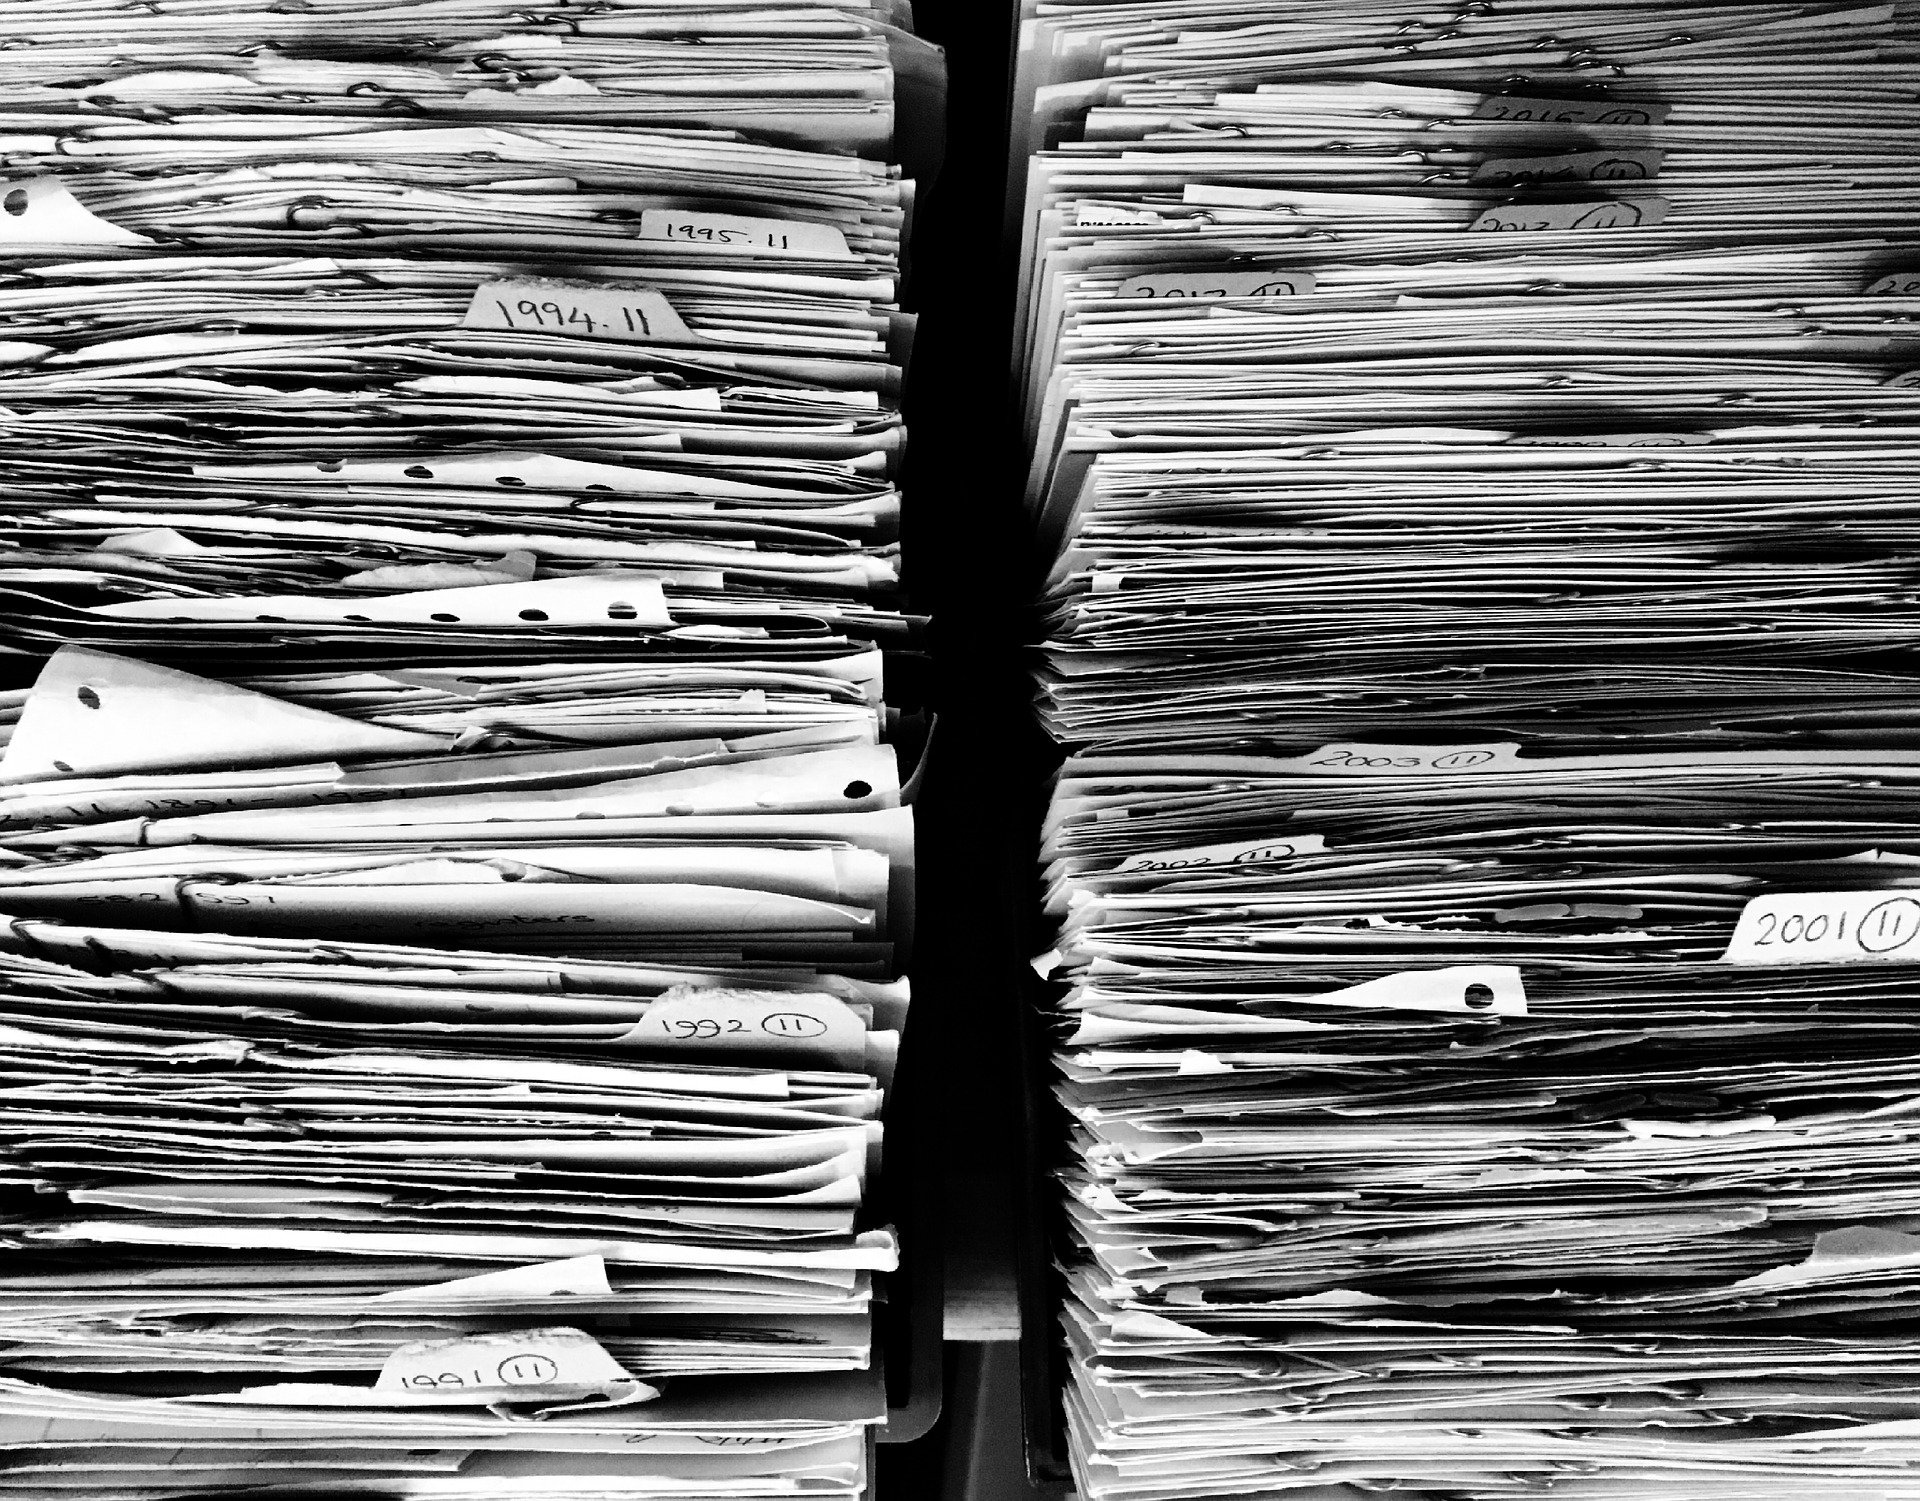 Poriadok v dokumentoch: ako dlho ich archivovať a kam ich v kancelárii uložiť